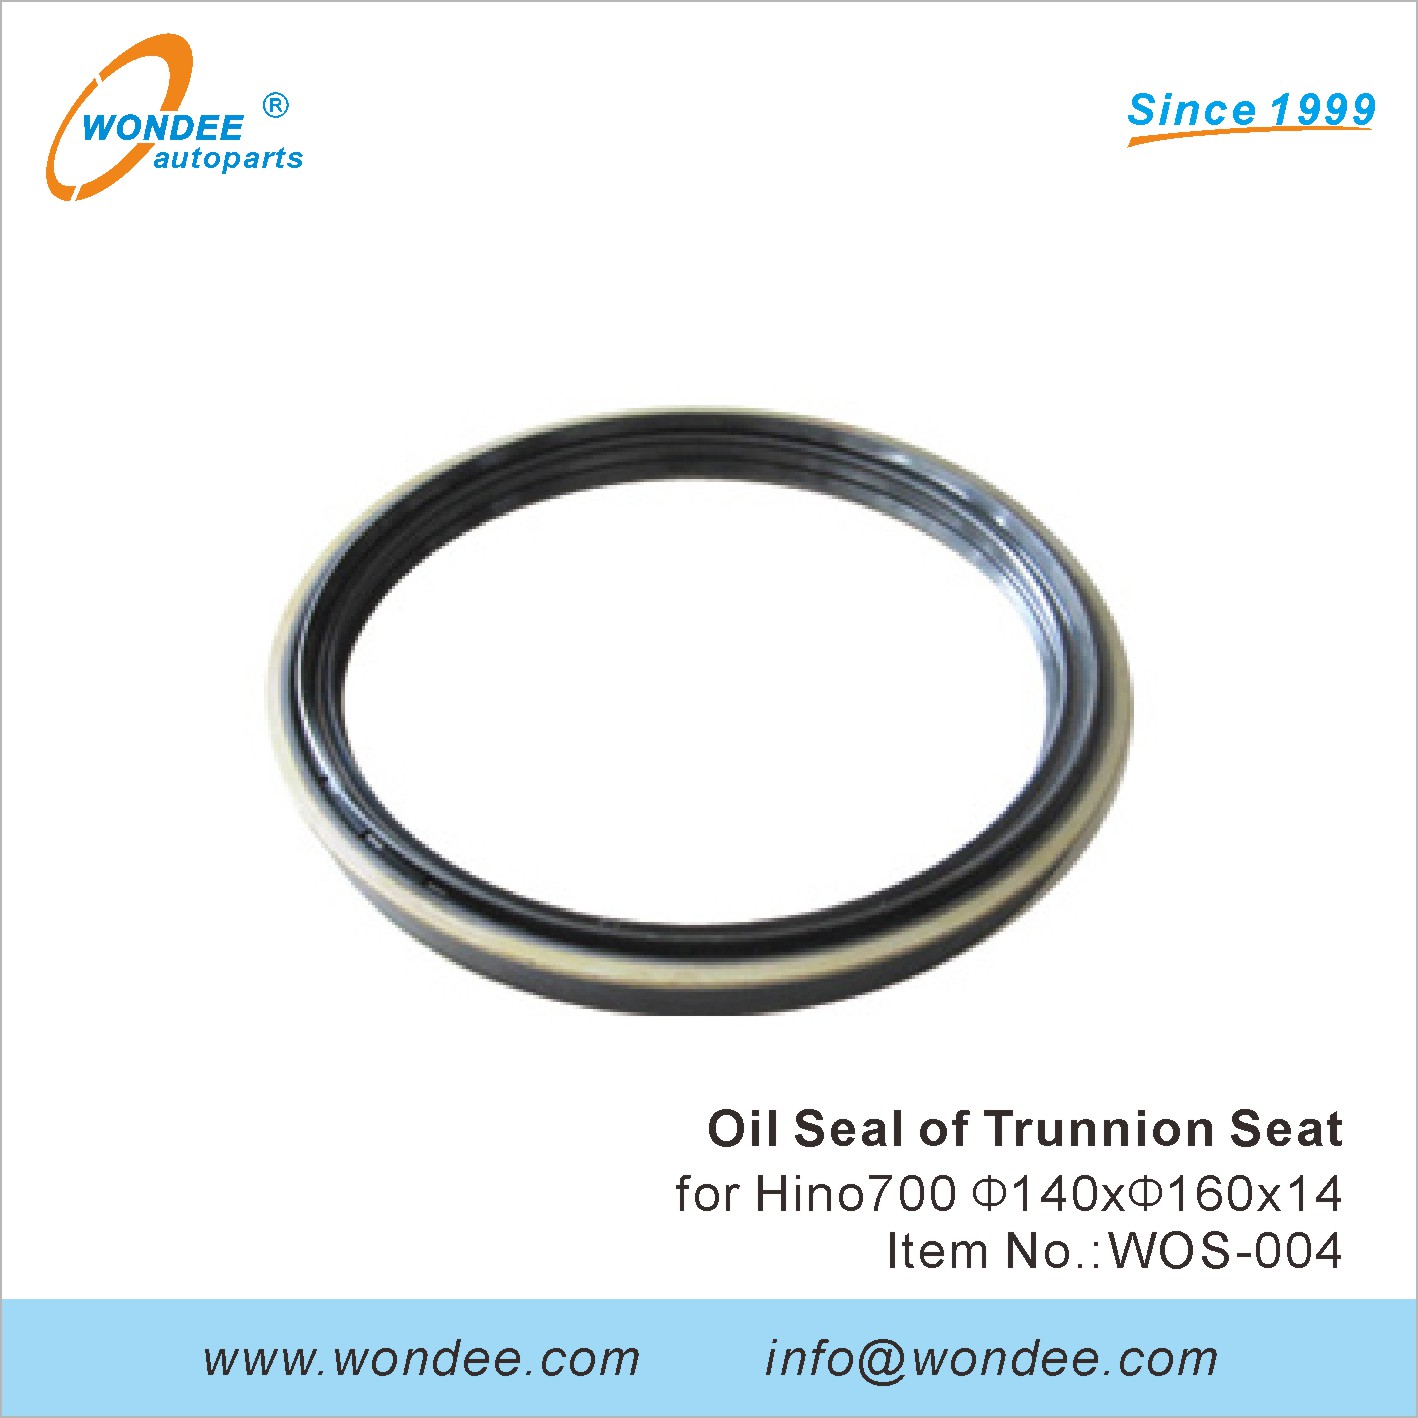 WONDEE oil seal of trunnion seat (4)